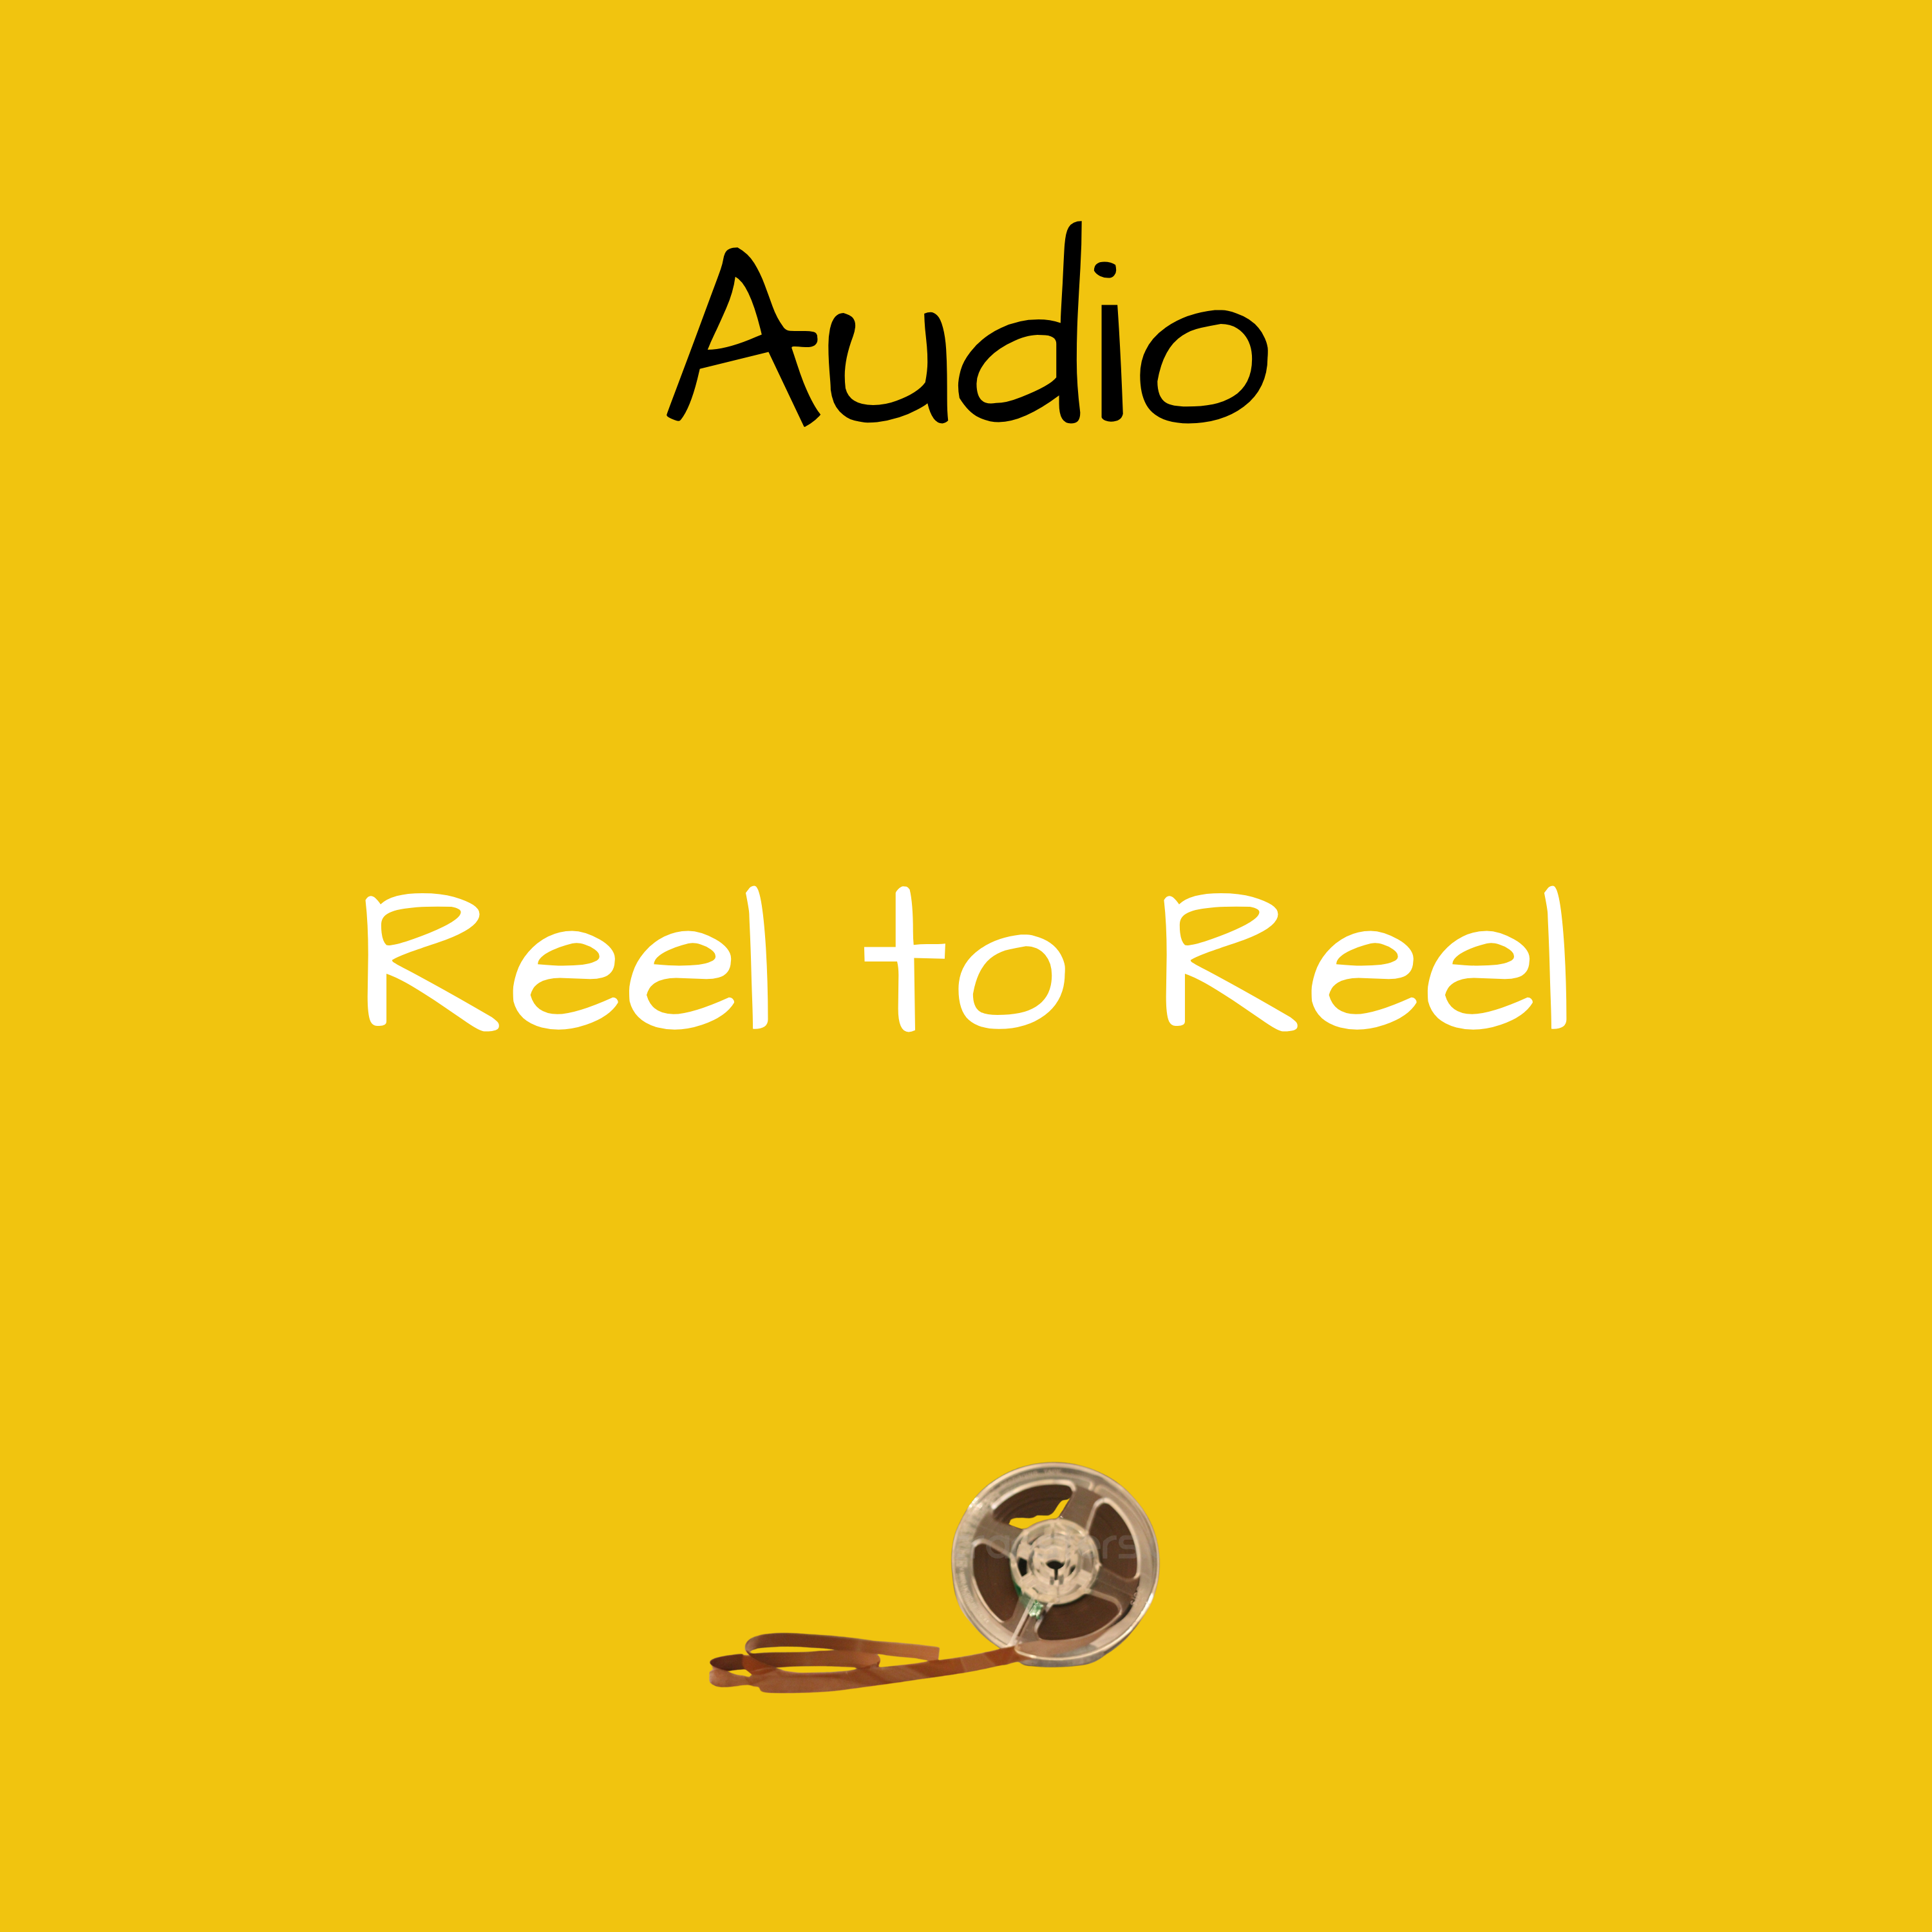 Reel to Reel Audio